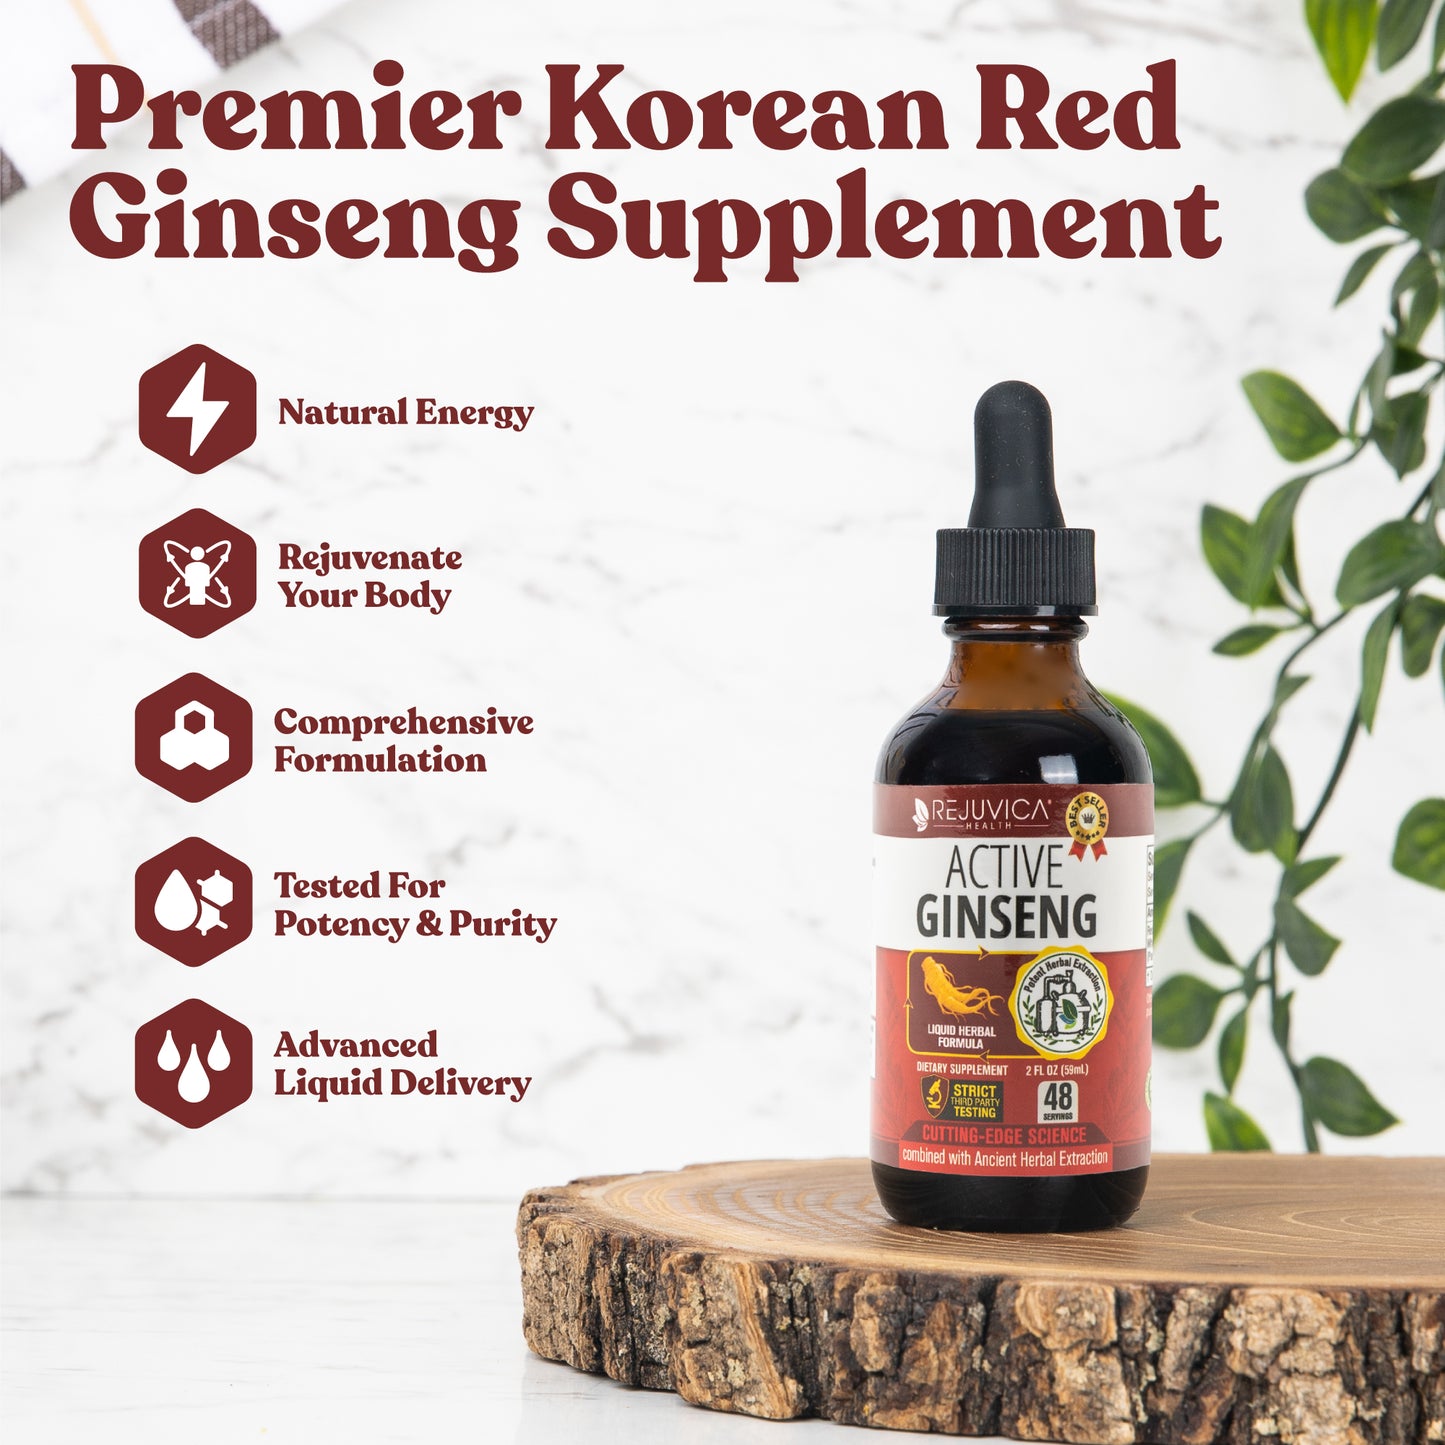 Active Ginseng Korean Red Panax Ginseng with Natural Ginsenosides